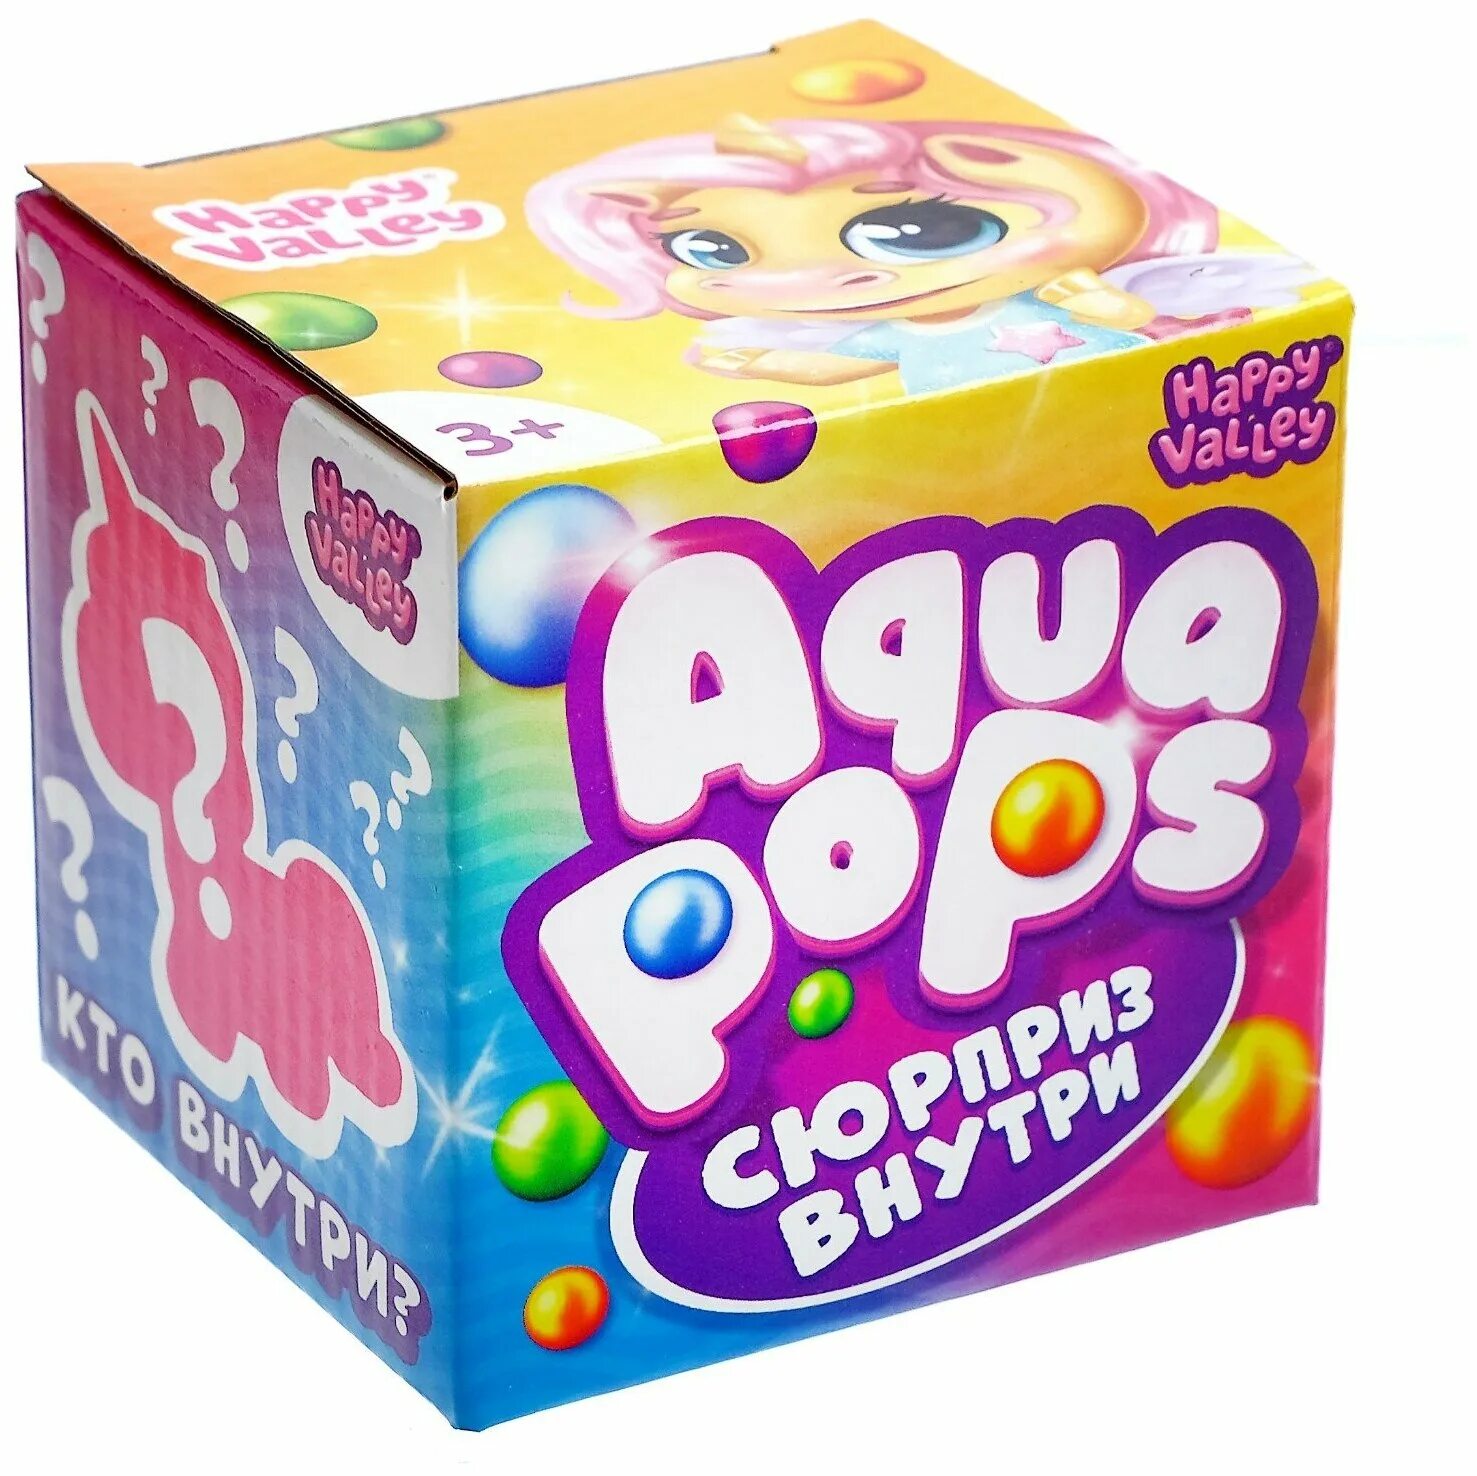 Игрушка сюрприз Аква Попс. Aqua Pops игрушка-сюрприз Aqua. 7162012 Игрушка-сюрприз Aqua Pops. Аква Попс сюрприз внутри инструкция.